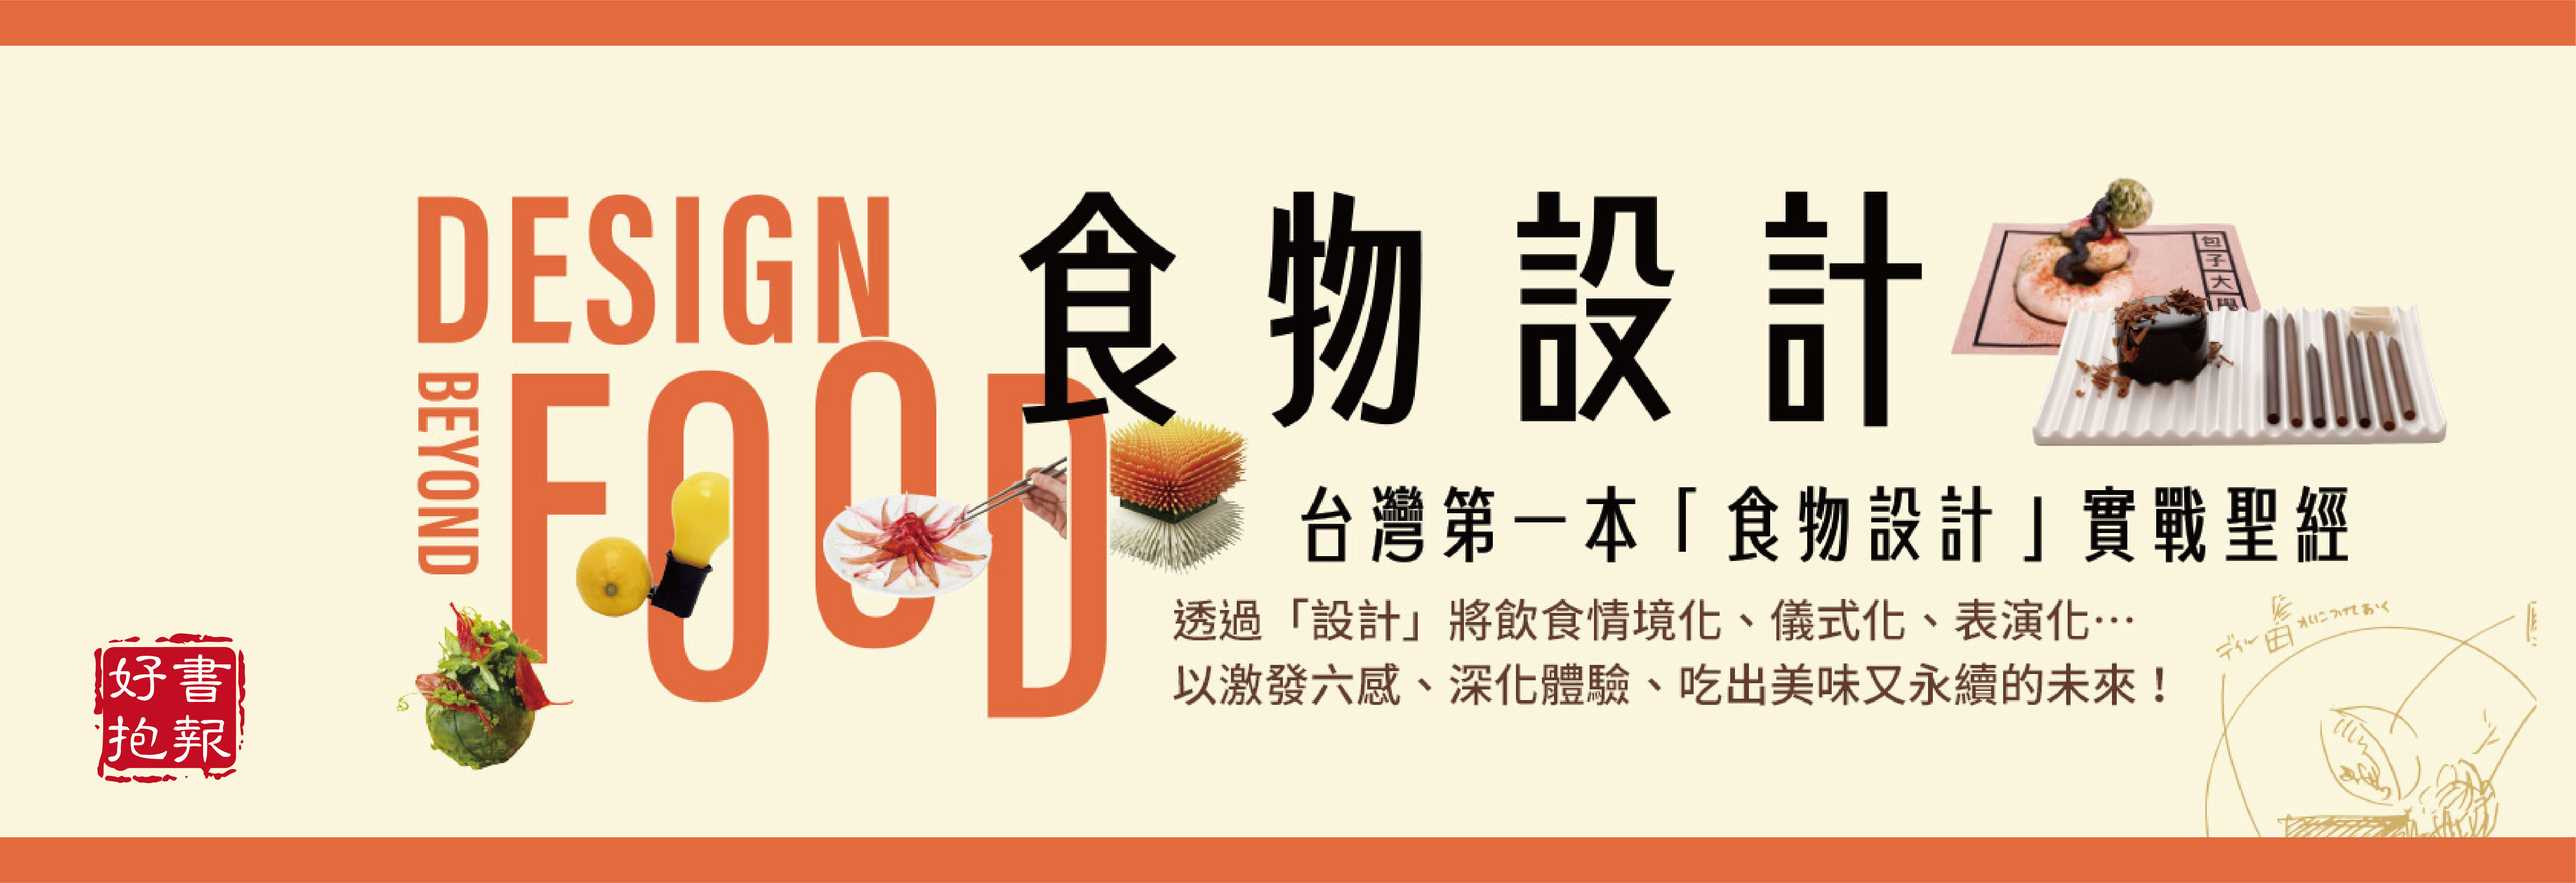 好书报报-食物设计 : 臺湾第一本「食物设计」实战圣经(另开新视窗)